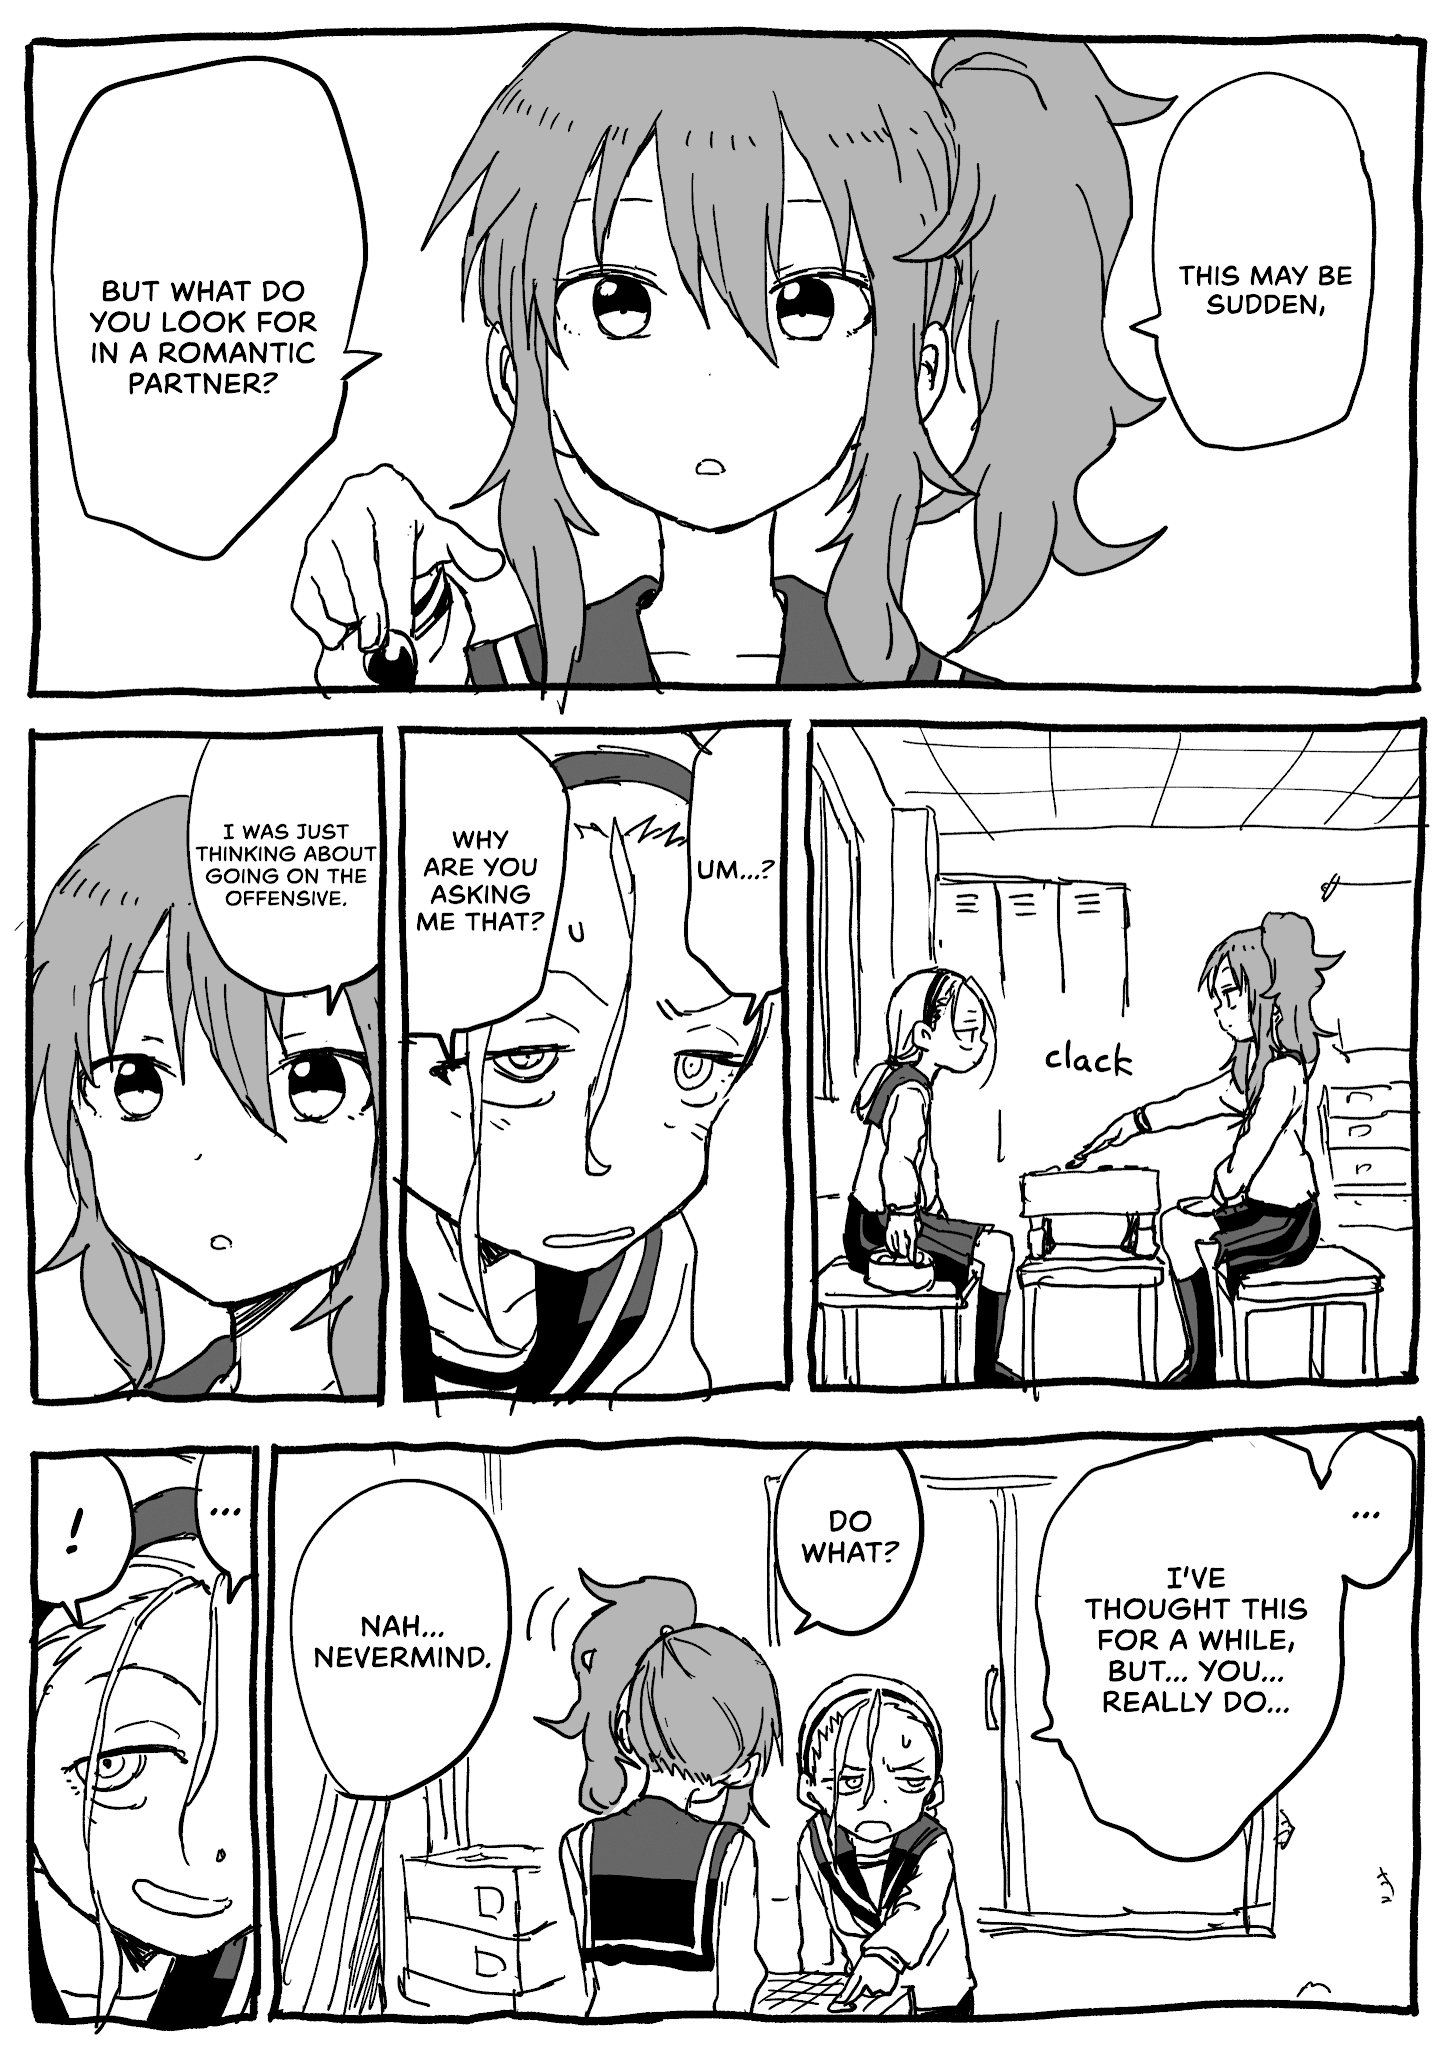 Rakugaki Manga - Page 1